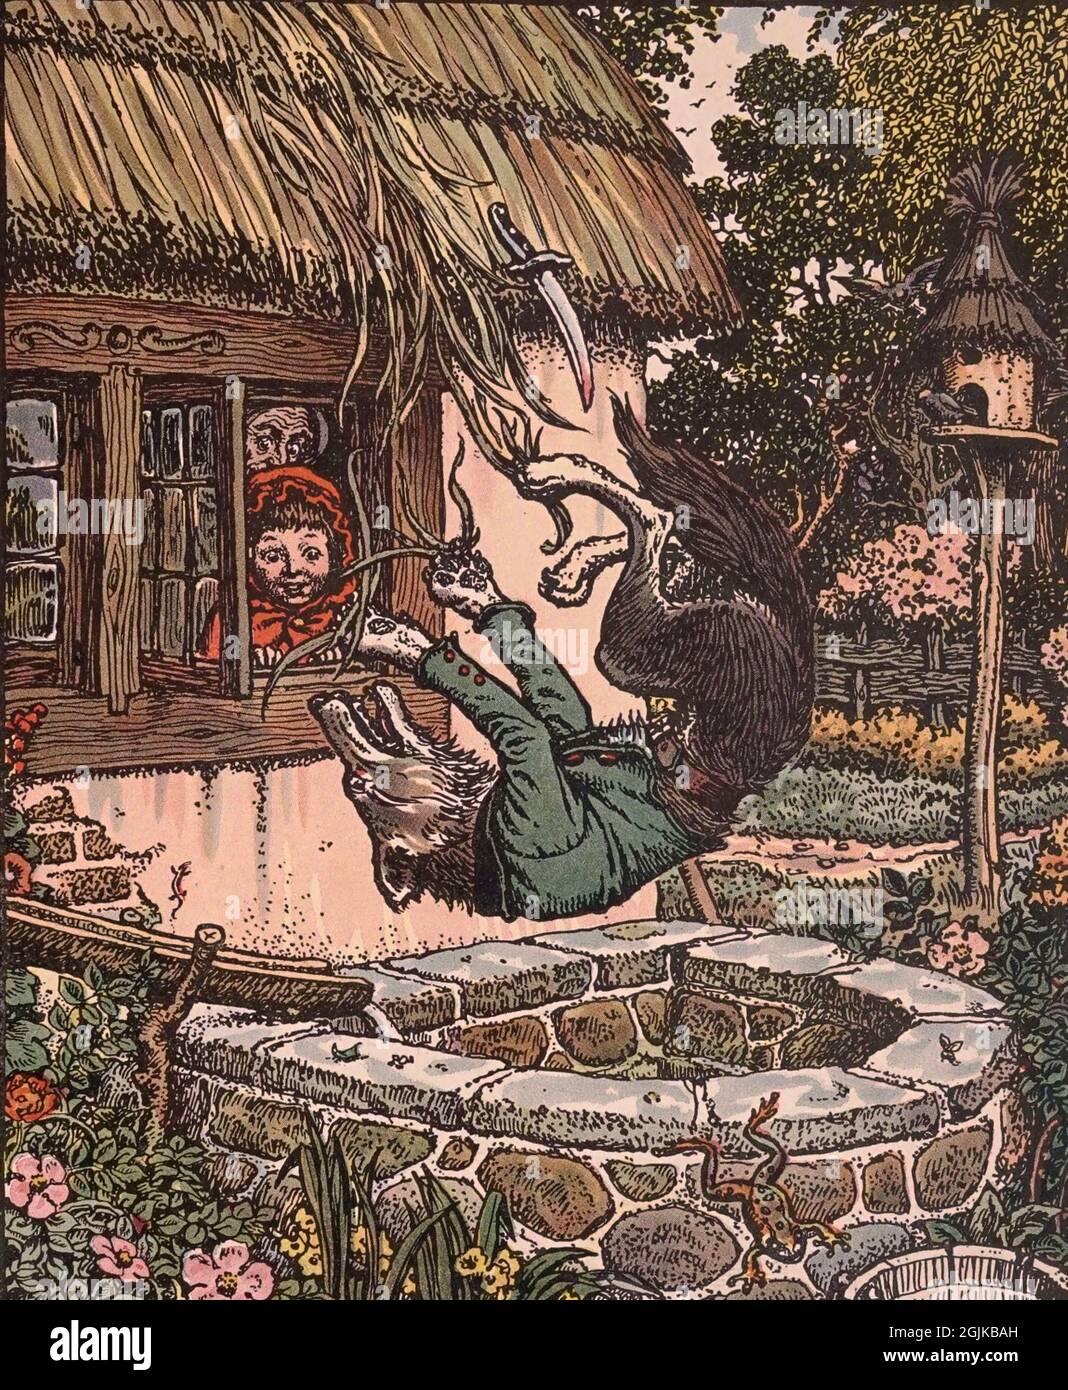 Illustration aus dem Buch Grimms Tiergeschichten der böse Wolf fällt in den Trog Stockfoto